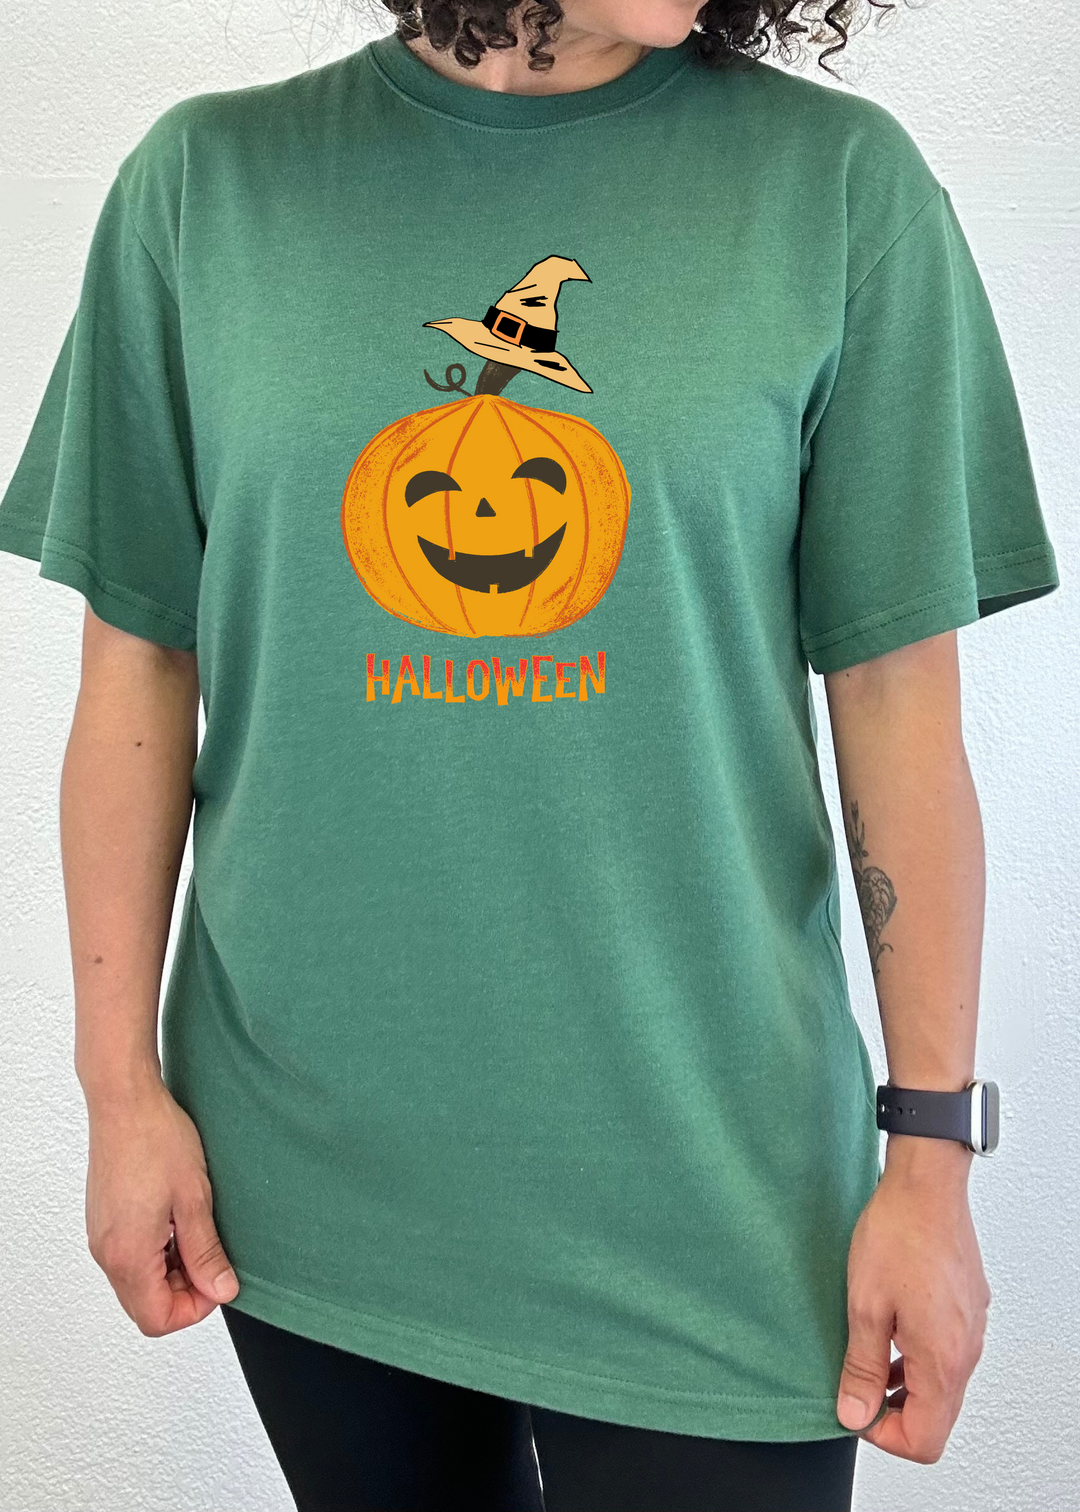 Halloween Pumpkin Unisex Graphic Bamboo T-Shirt teal